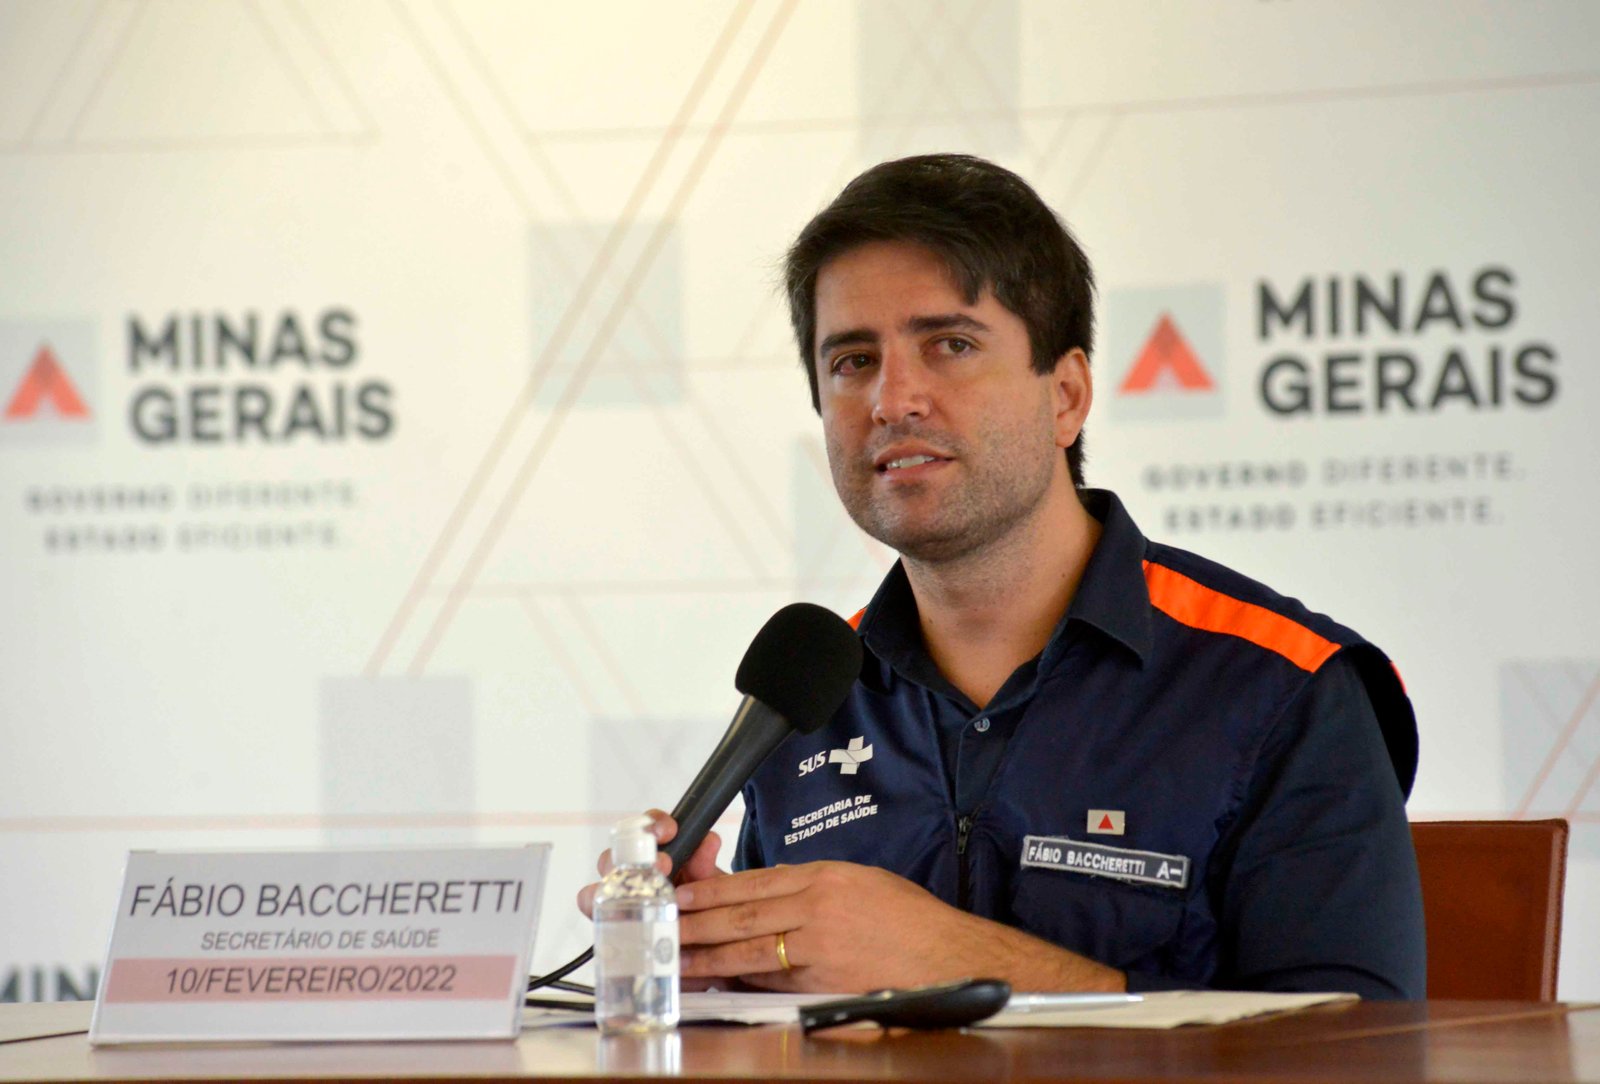 O secretário de Saúde de Minas Gerais, Fábio Baccheretti, durante coletiva de imprensa sobre a onda de Covid-19 que atingia o país em 2022. Foto: Agência Minas (Divulgação)